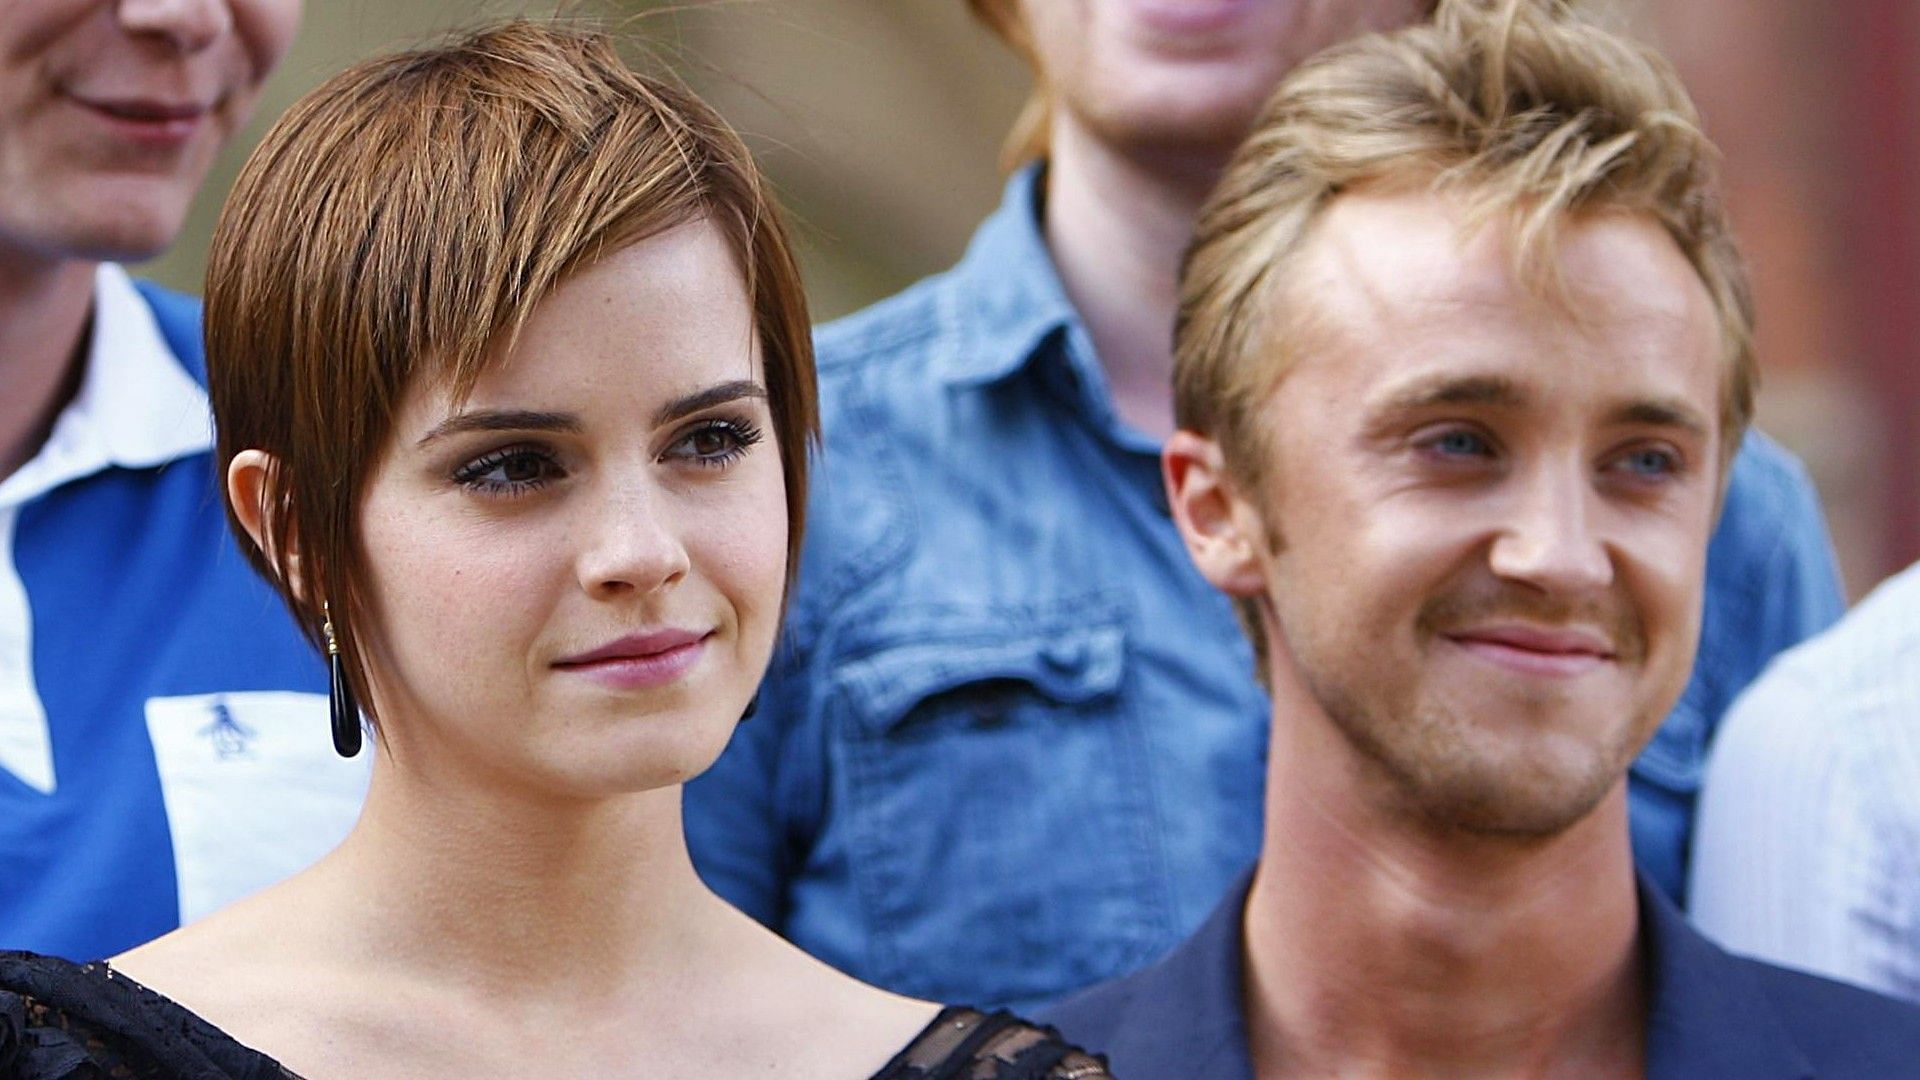 “always Had A Secret Love” Tom Felton Opens Up About Emma Watson In New Memoir